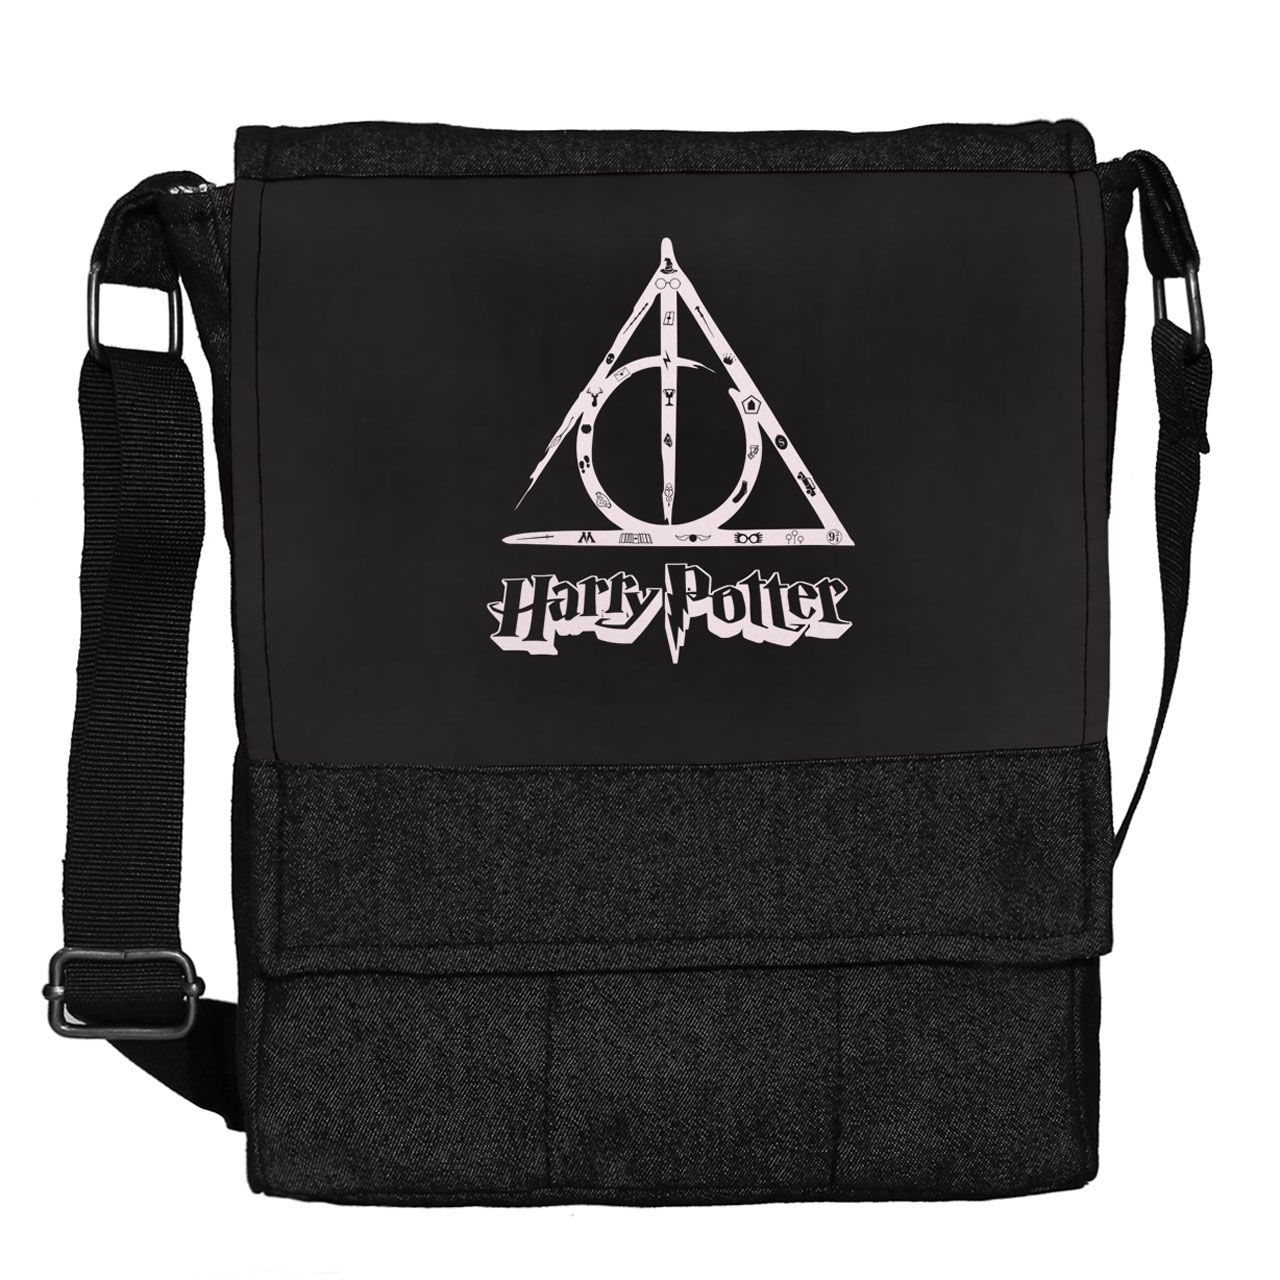 کیف دوشی گالری چی چاپ طرح Harry Potter کد 65692 -  - 1